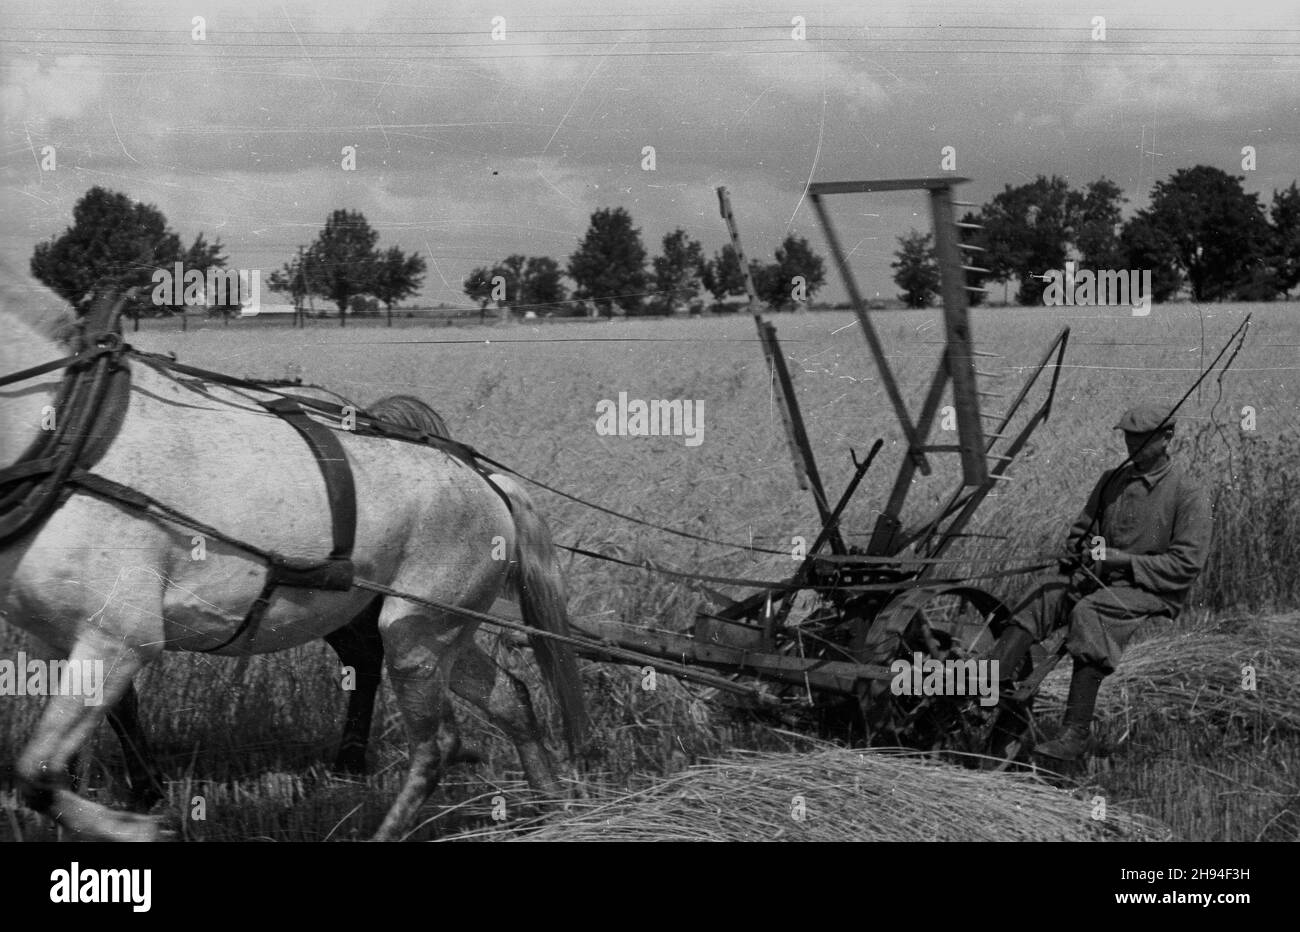 1947-07. Prace ¿niwne. Nz. rolnik kosi zbo¿e.  Dok³adny dzieñ wydarzenia nieustalony.  bk/ak  PAP      July 1947. A harvest works - mowing the corn.   bk/ak  PAP Stock Photo